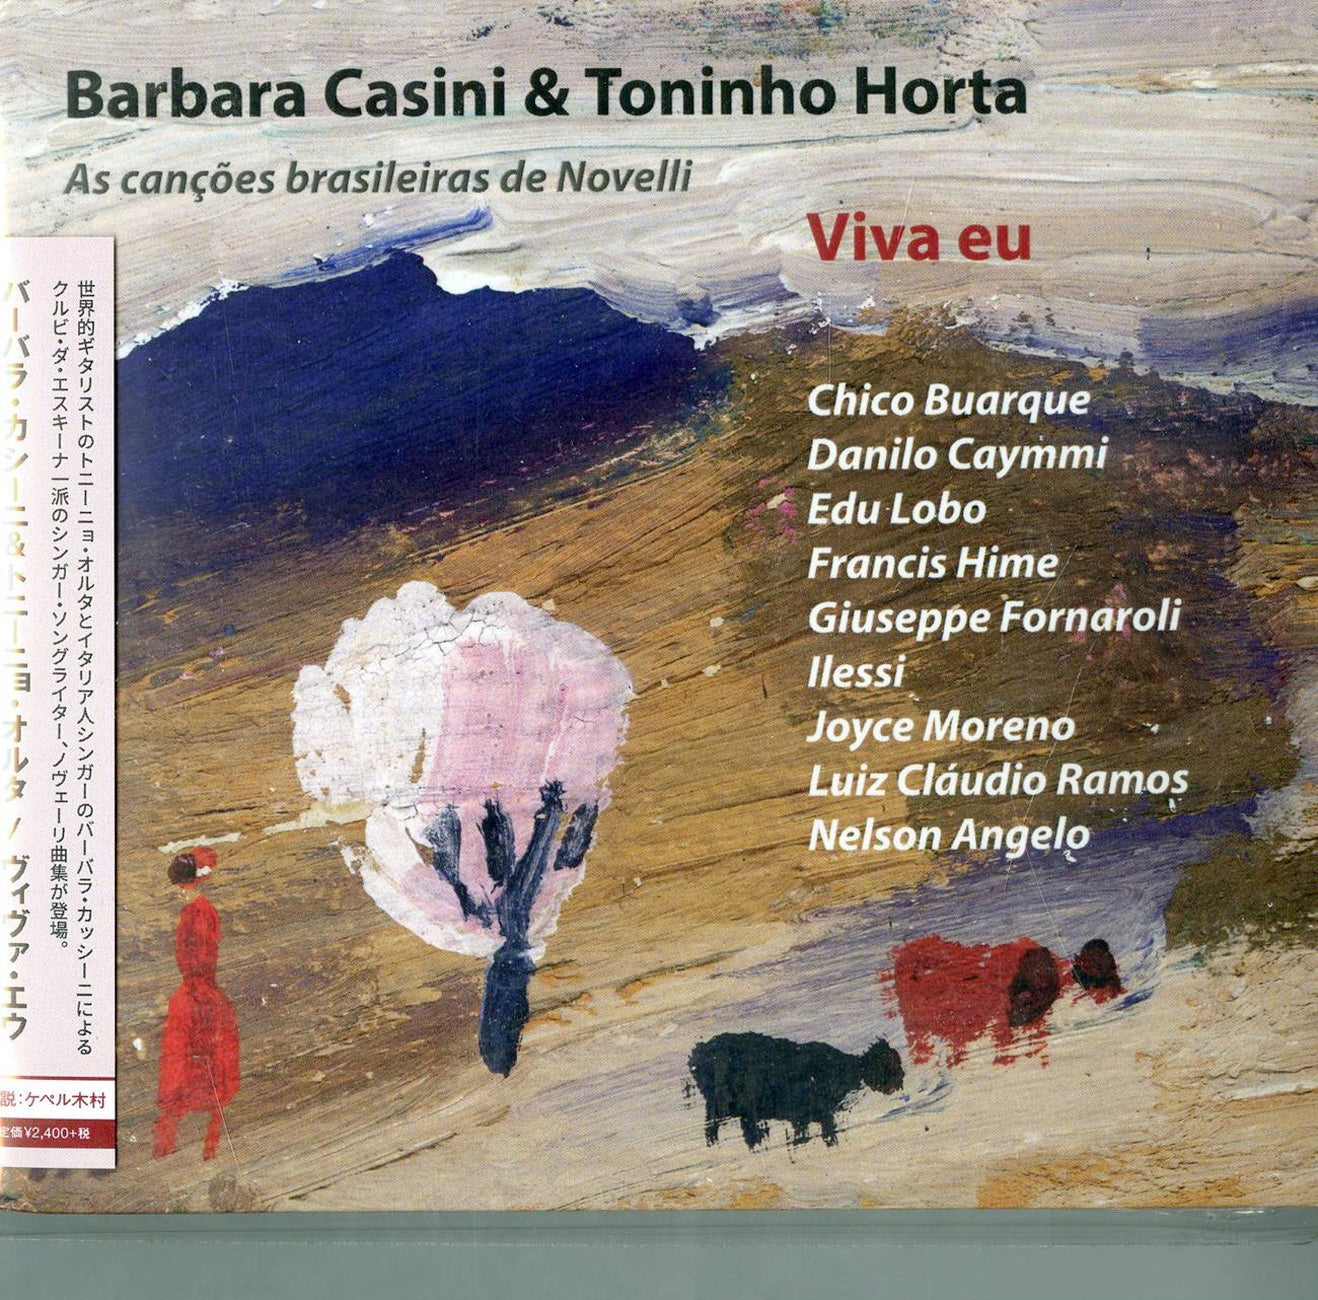 Barbara Casini & Toninho Horta - Viva Eu - Import CD